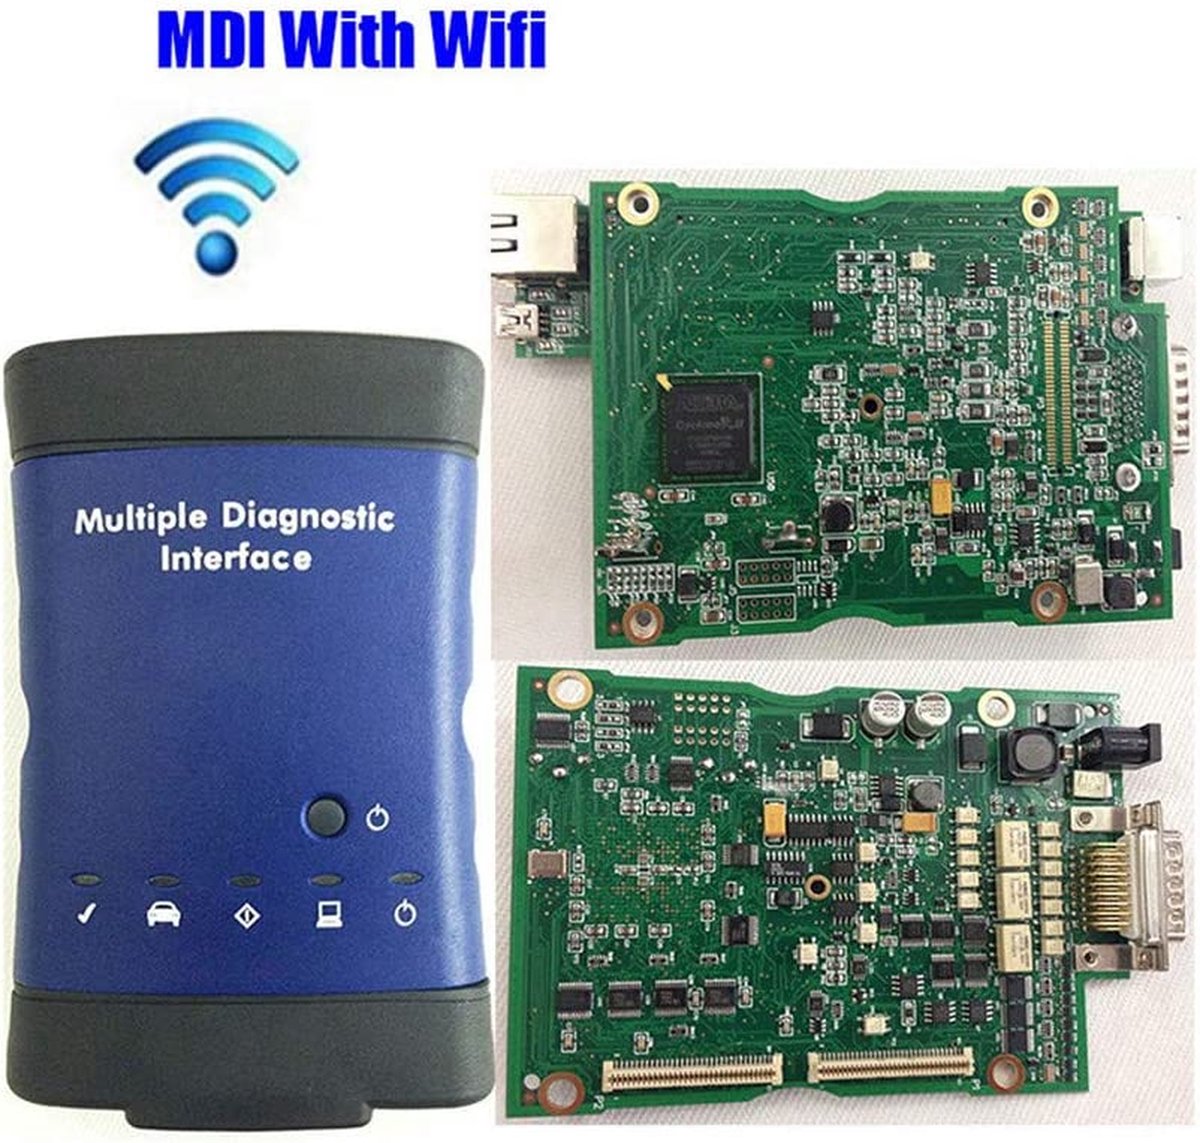 Multiple Diagnostic Interface scanner voor meerdere diagnotische interfaces met WIFI, zonder software.